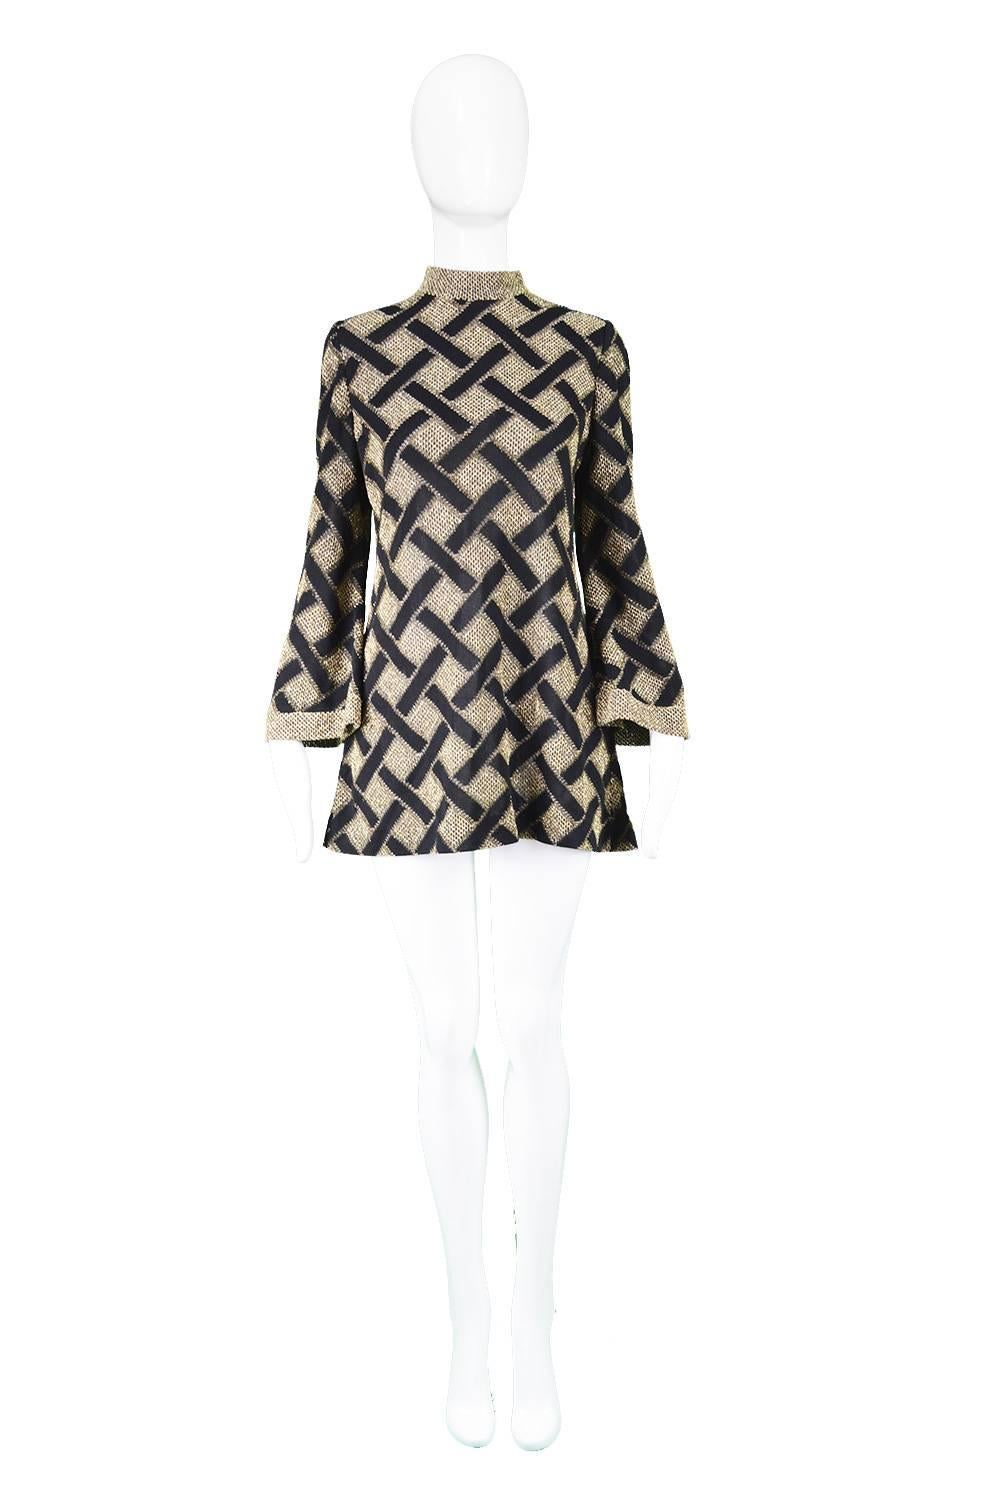 Pierre Balmain 1960s Black & Gold Lamé Vintage Tunic Shirt / Micro Dress

Estimated Size: UK 12/ US 8/ EU 40. Please check measurements. 
Bust - 36” / 91cm
Waist - 32” / 81cm
Hips - 40” / 101cm
Length (Shoulder to Hem) - 28” / 71cm
Shoulder to